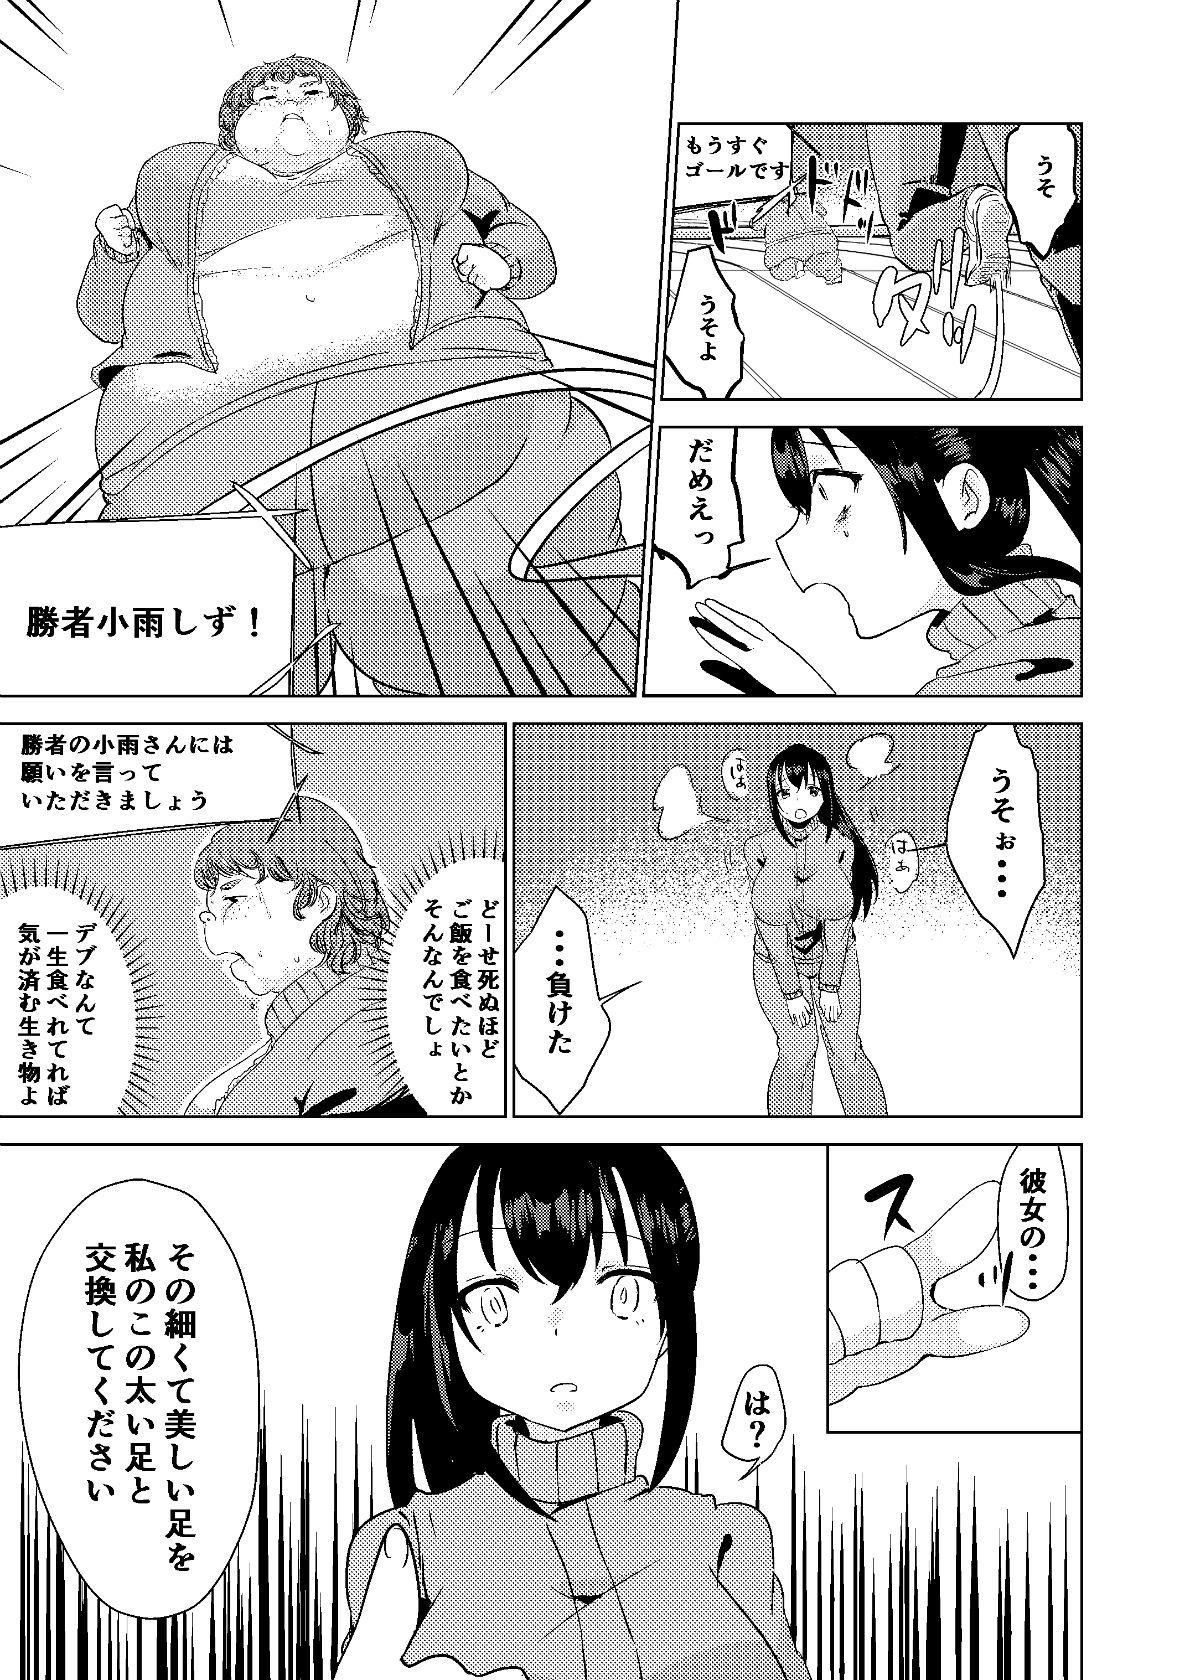 Nena Kyou kara Watashi wa Anata ni Naru. - Original Young Old - Page 11